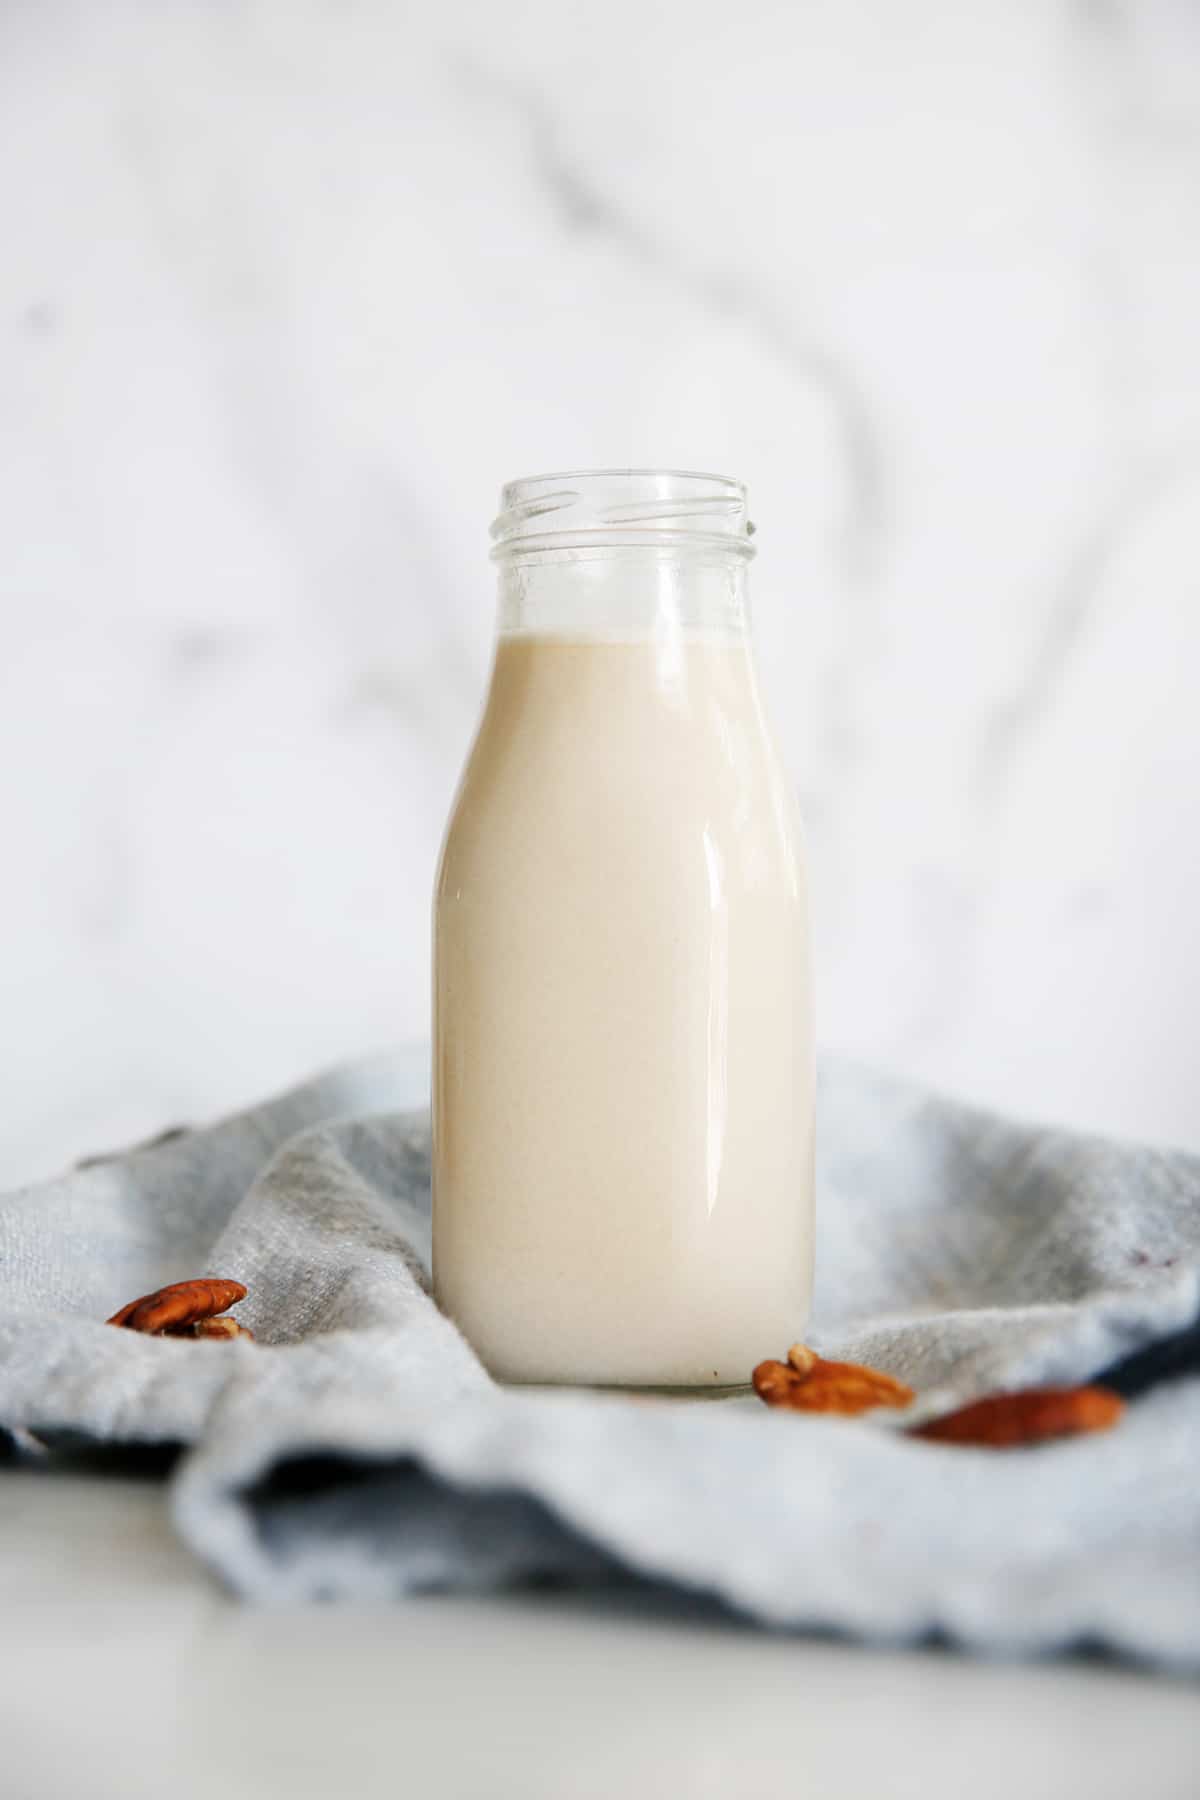 pecan milk recipe in a bottle